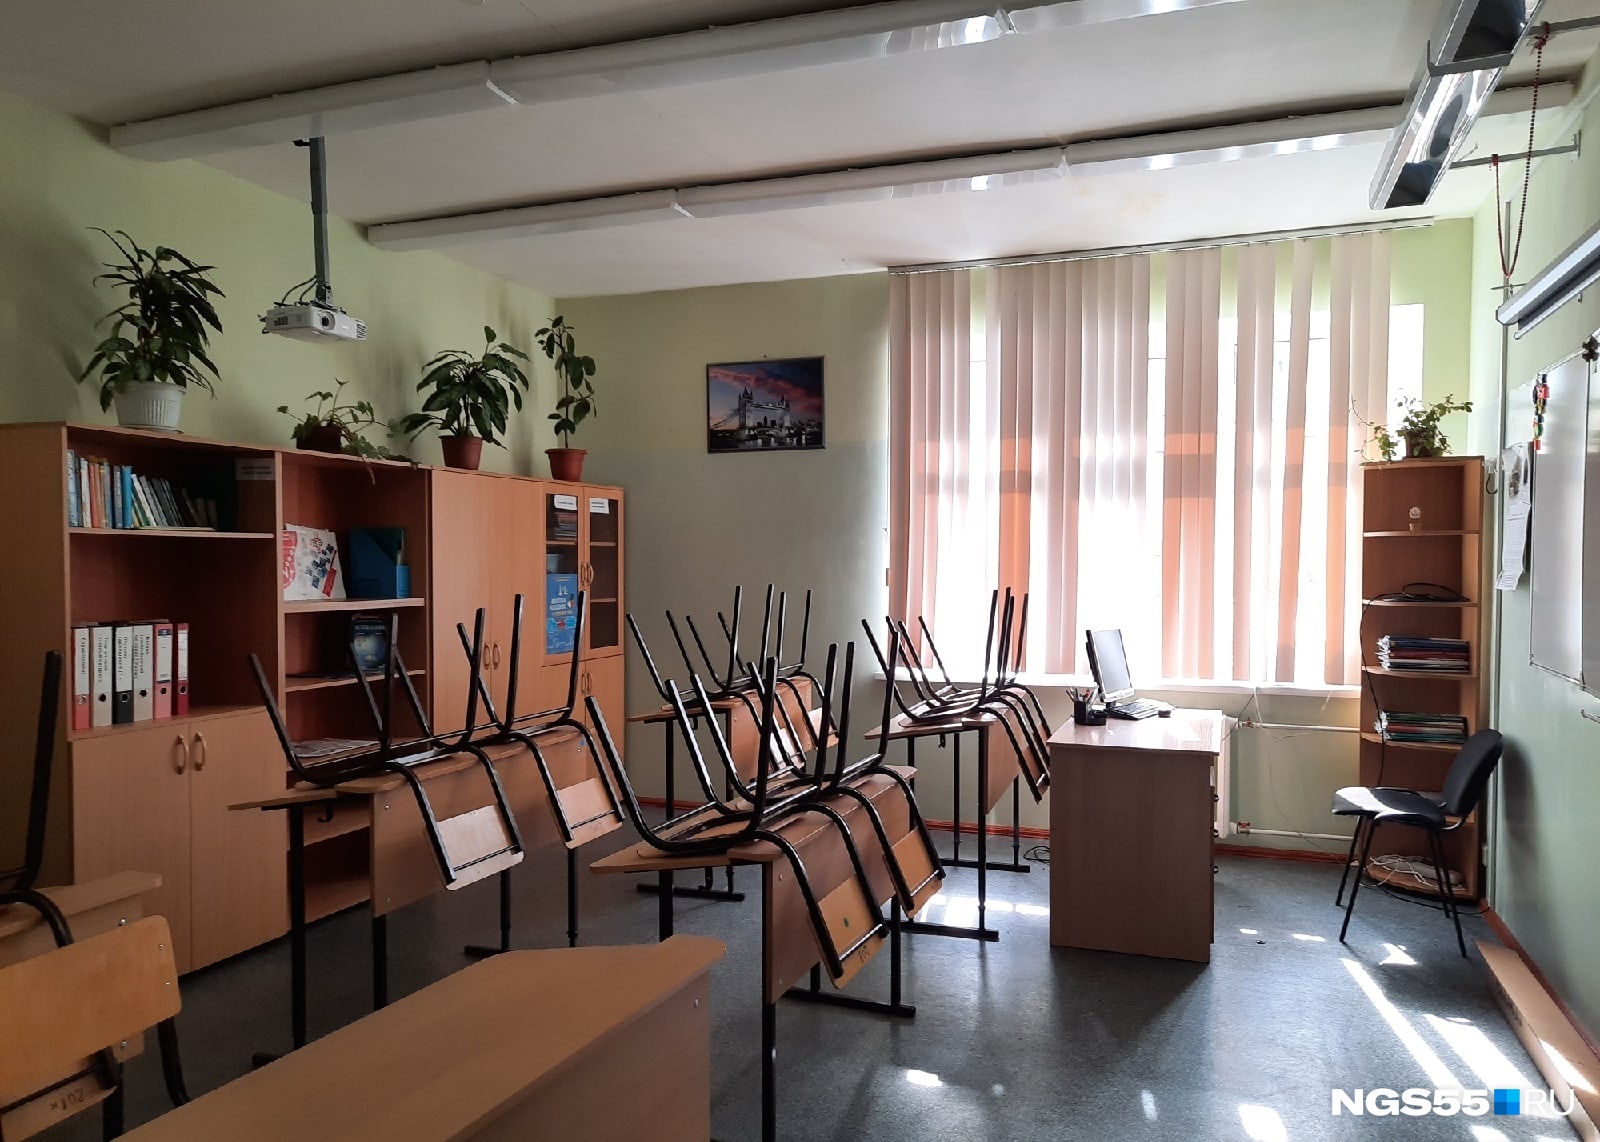 Омский педагог пожаловался на отсутствие выплат за ЕГЭ — прокуратура начала проверку